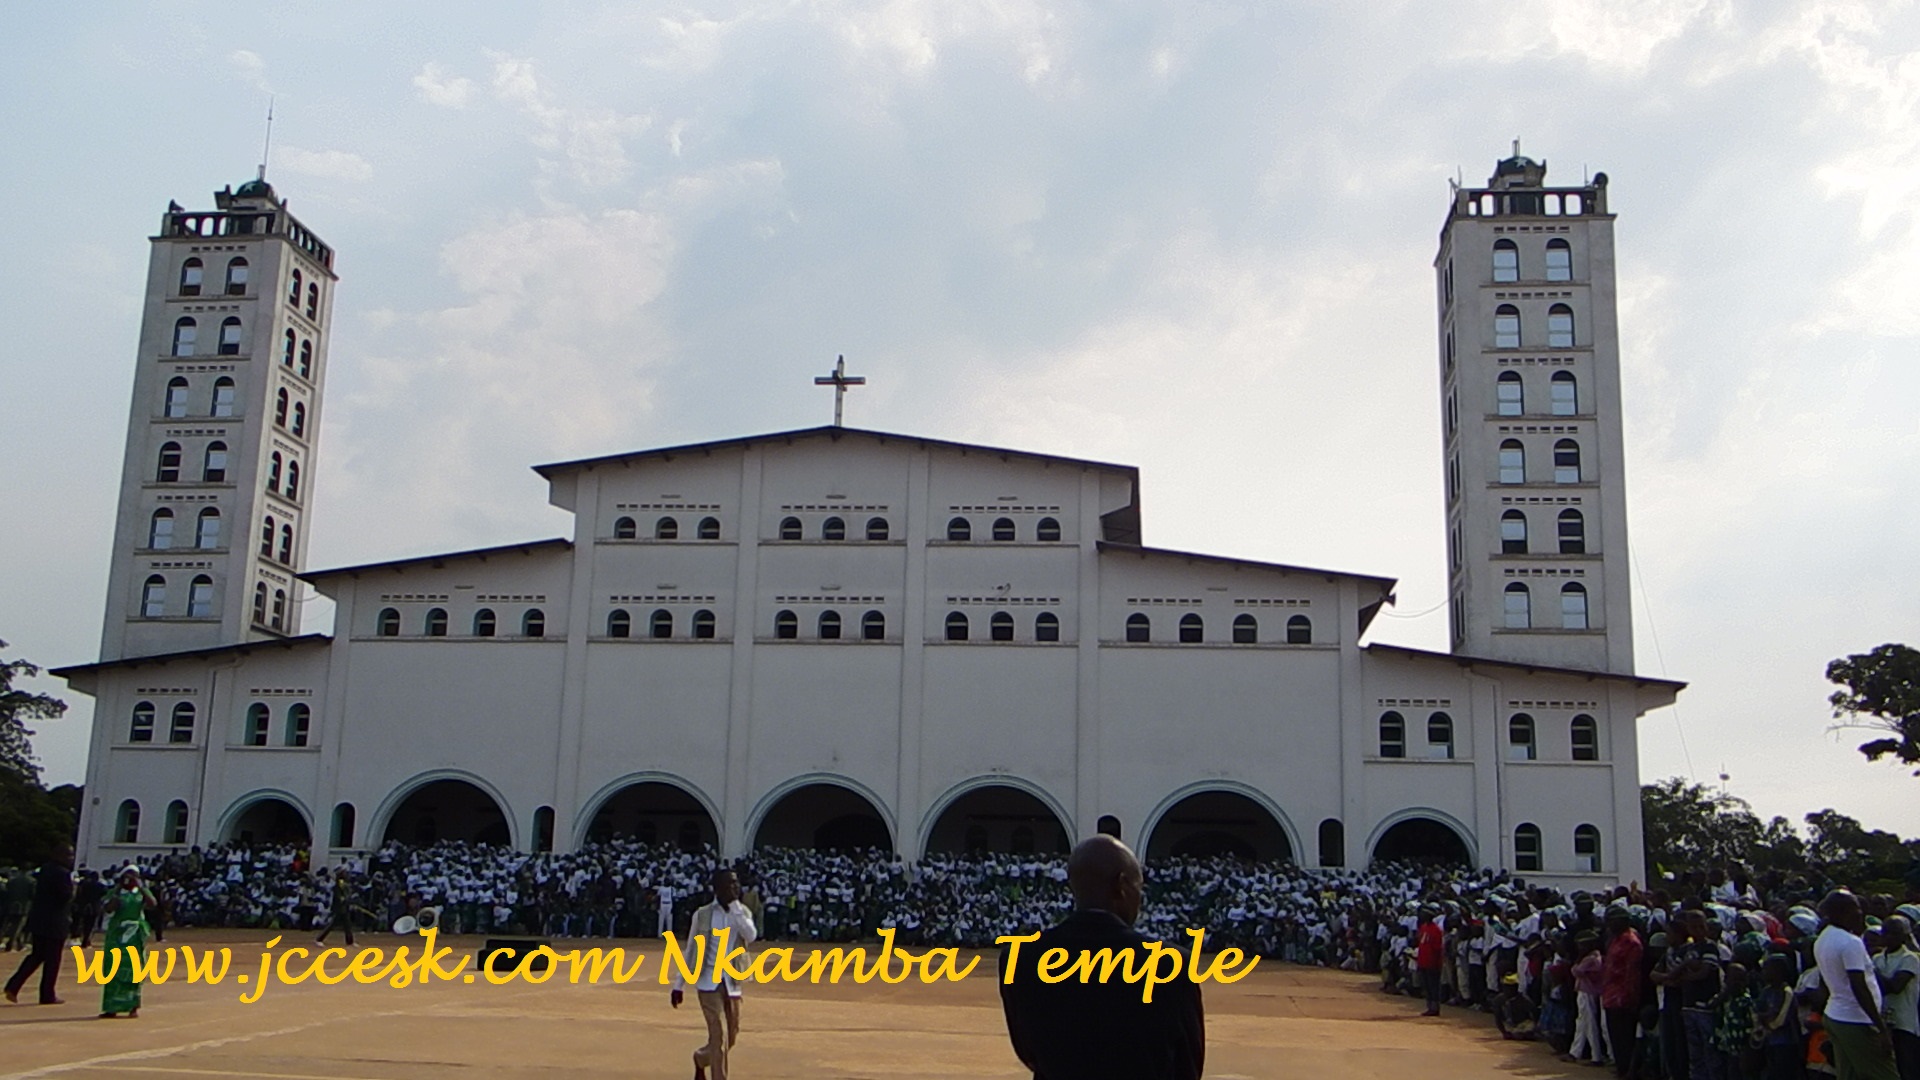 www.jccesk.com_Nkamba_Temple Nkamba New Jerusalem